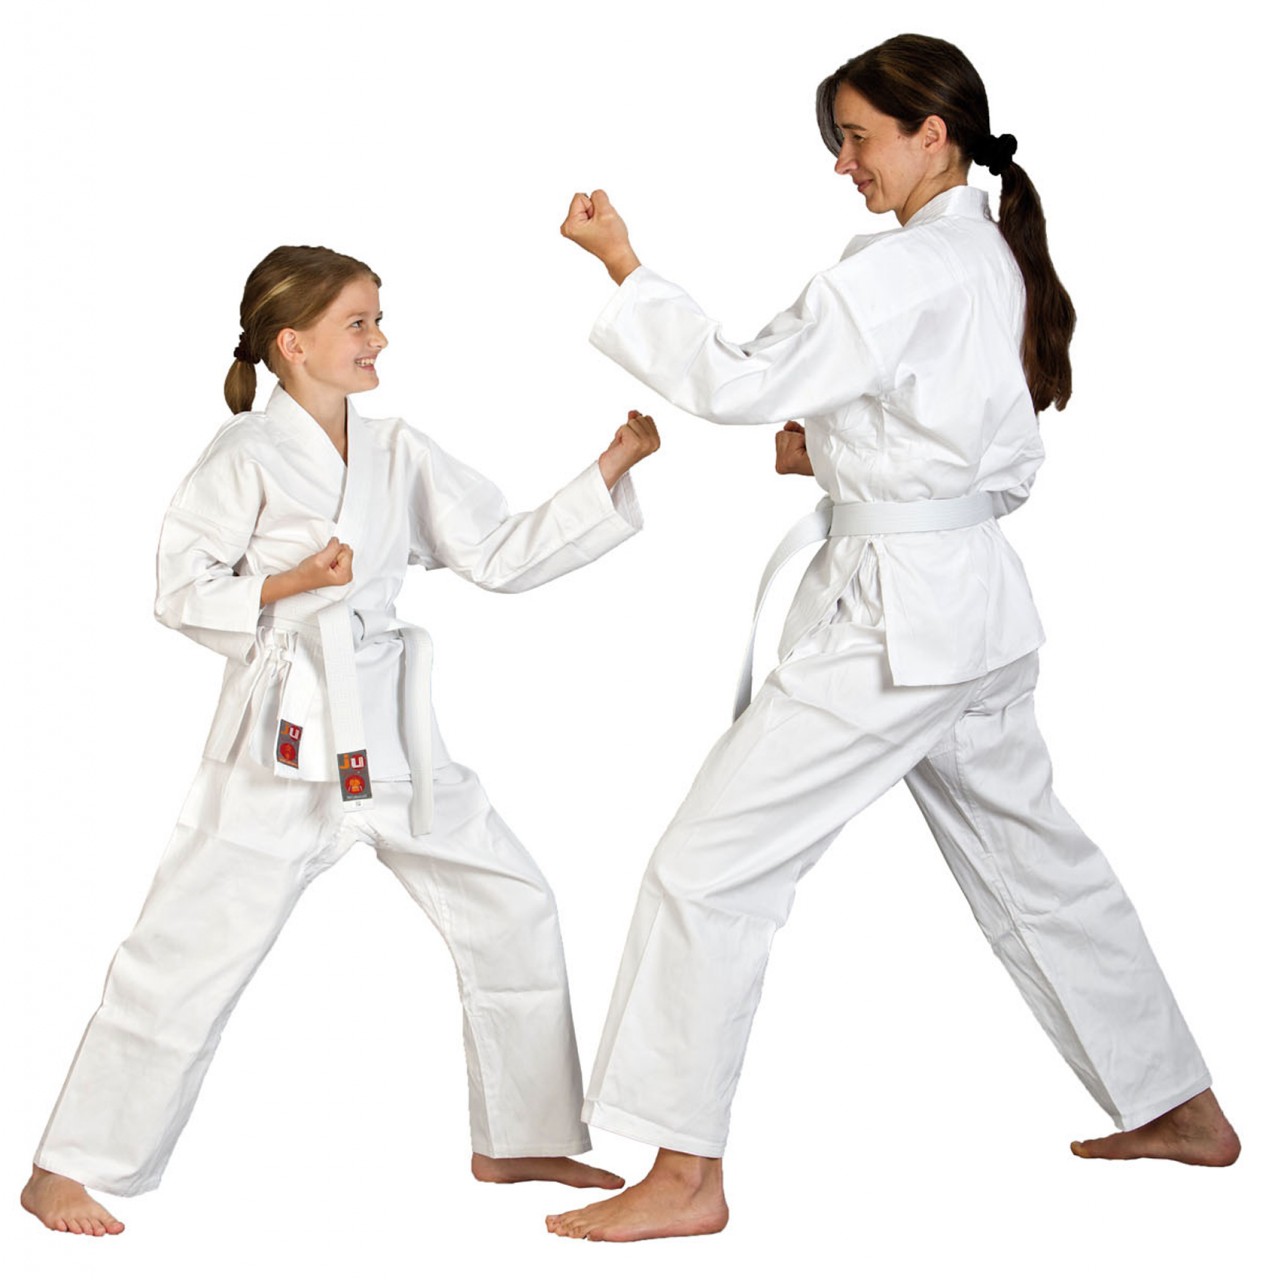 Ju-Sports Karateanzug To Start von Ju-Sports